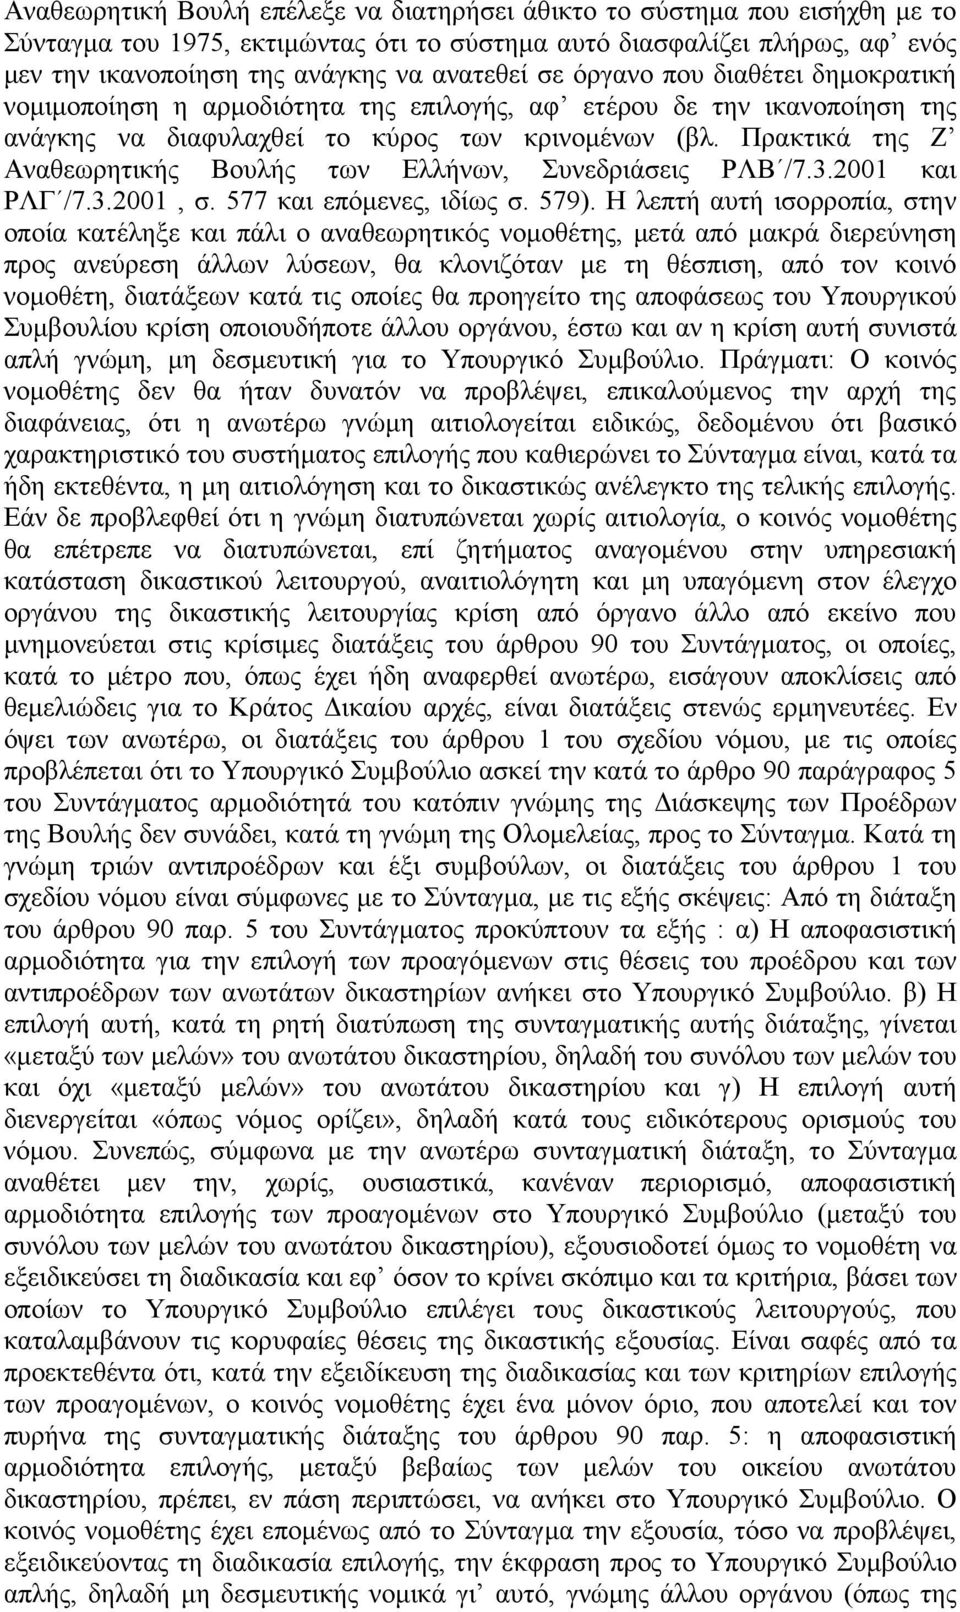 Πρακτικά της Ζ Αναθεωρητικής Βουλής των Ελλήνων, Συνεδριάσεις ΡΛΒ /7.3.2001 και ΡΛΓ /7.3.2001, σ. 577 και επόµενες, ιδίως σ. 579).